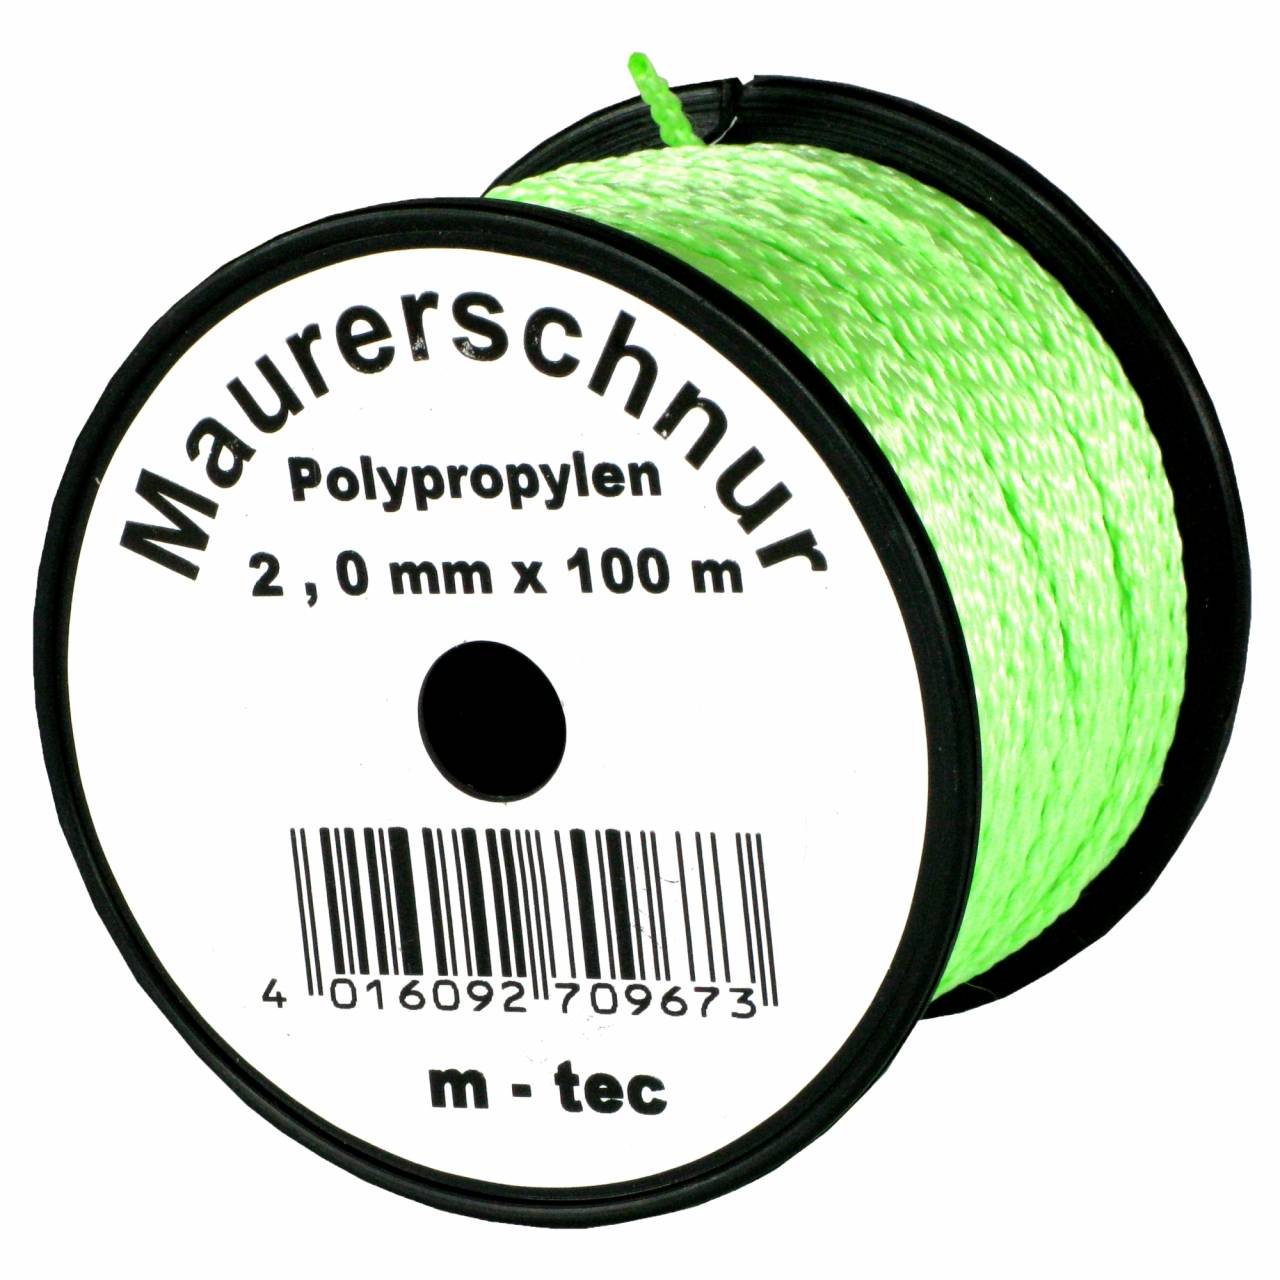 Lot-Maurerschnur 50 m x Ø 2,0 mm Grün-Fluoreszierend